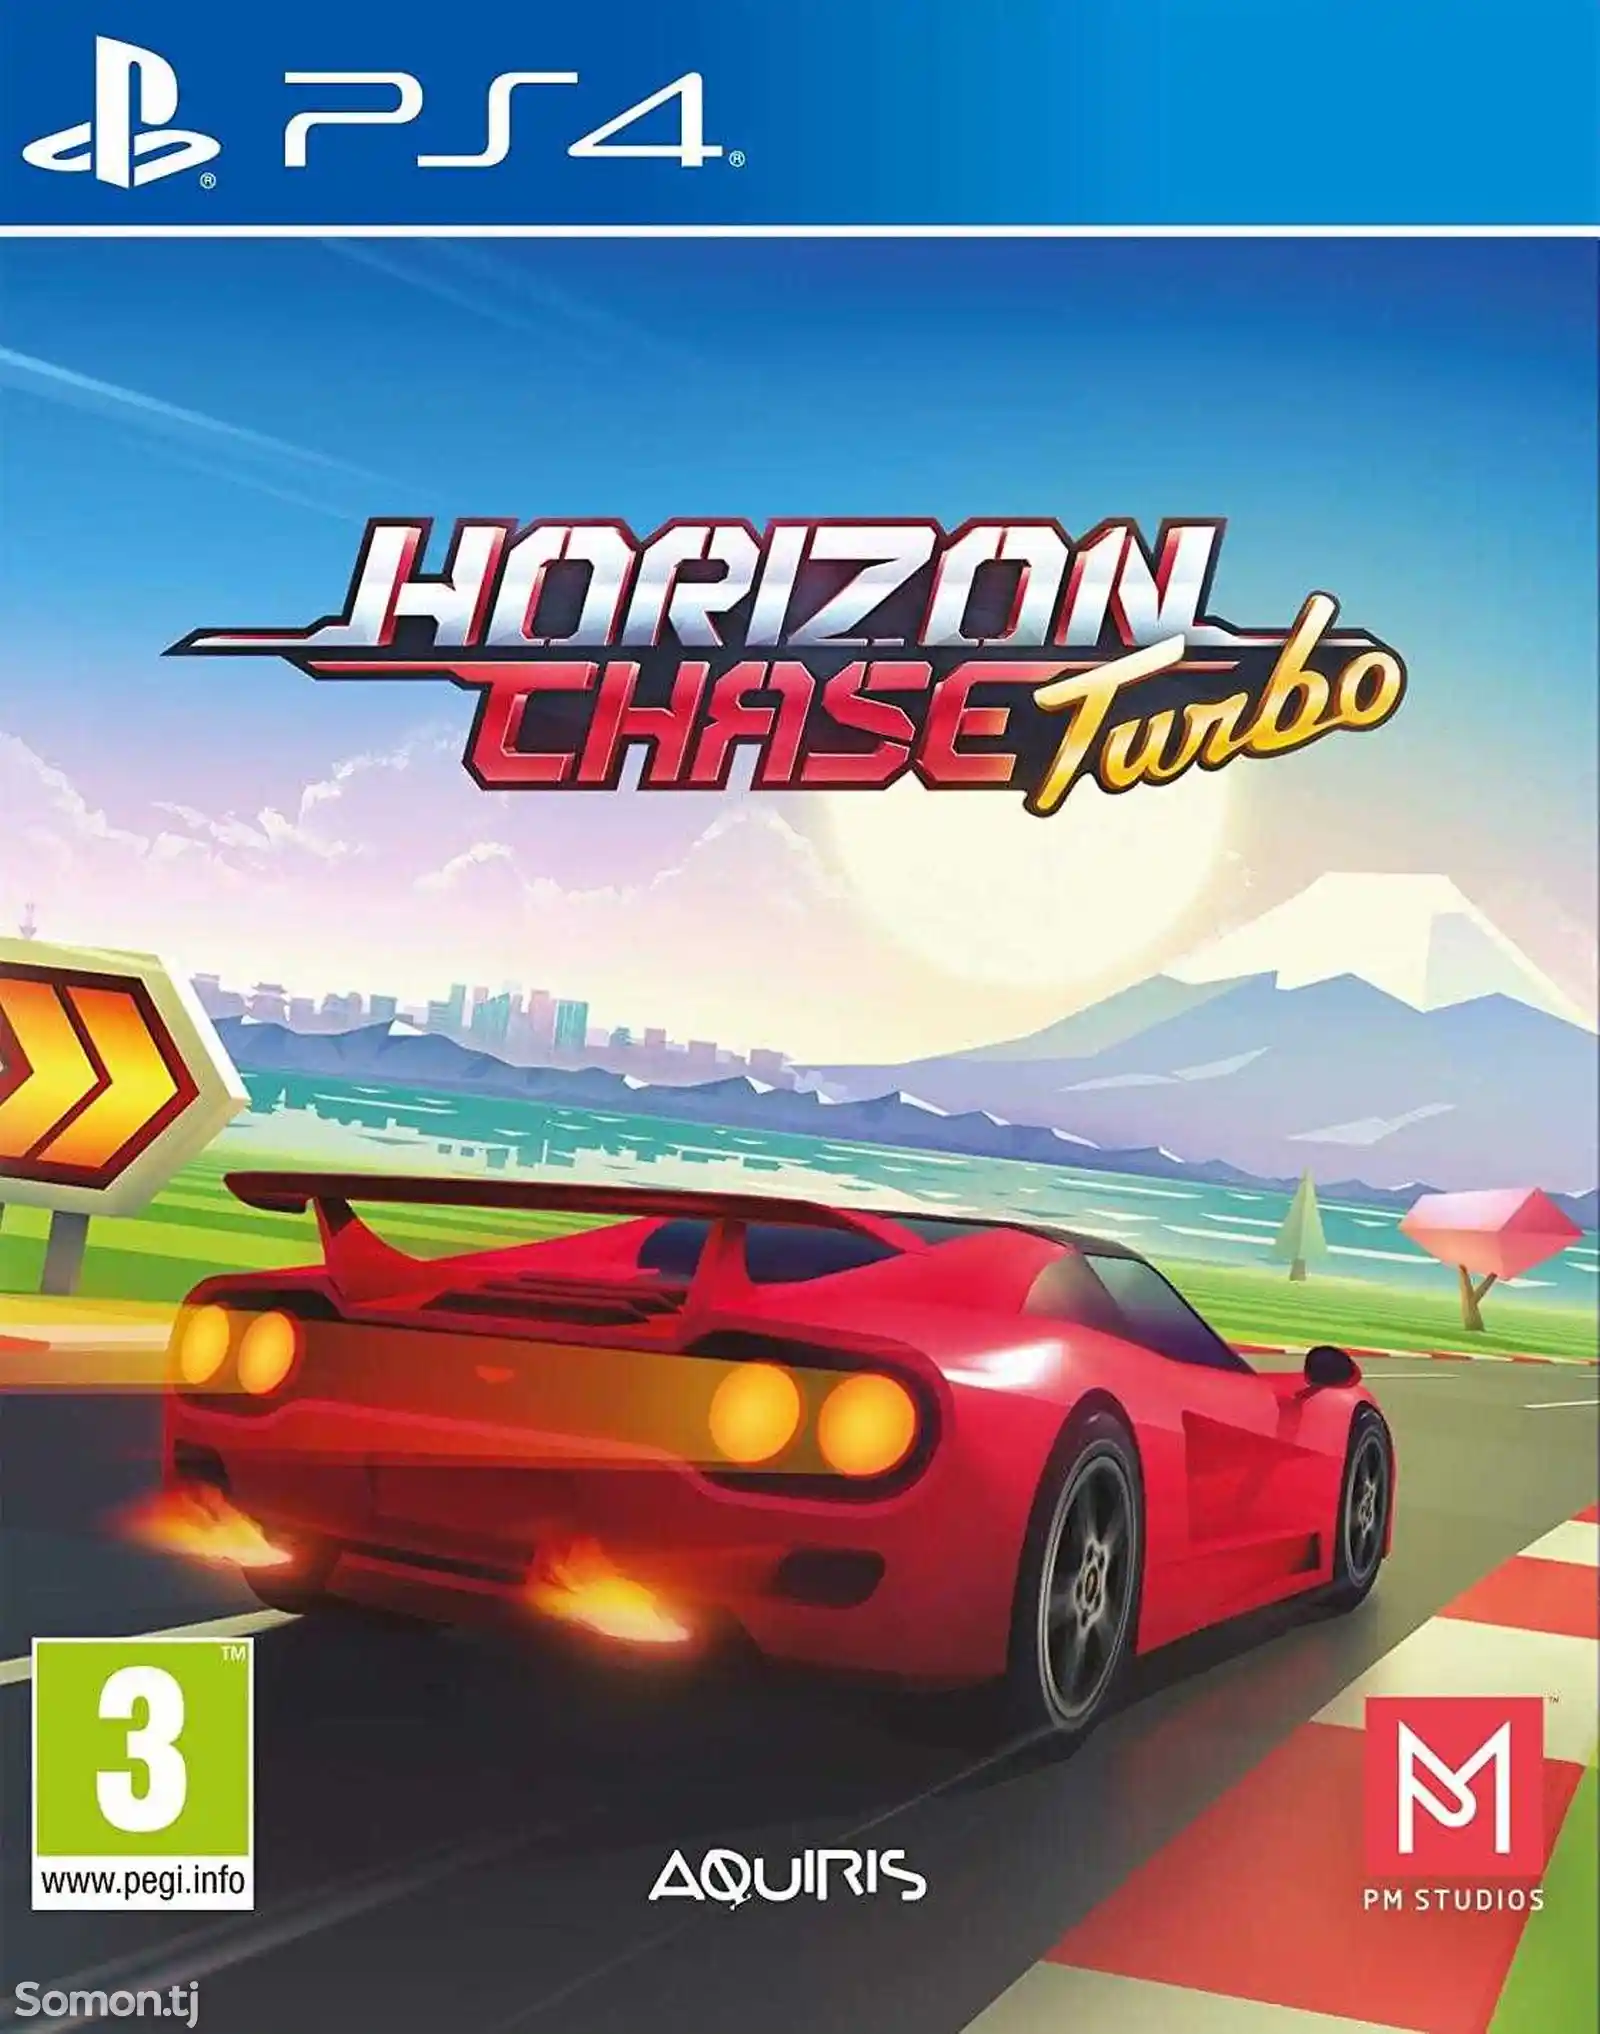 Игра Horizon chase turbo для PS-4 / 5.05 / 6.72 / 7.02 / 7.55 / 9.00 /-1